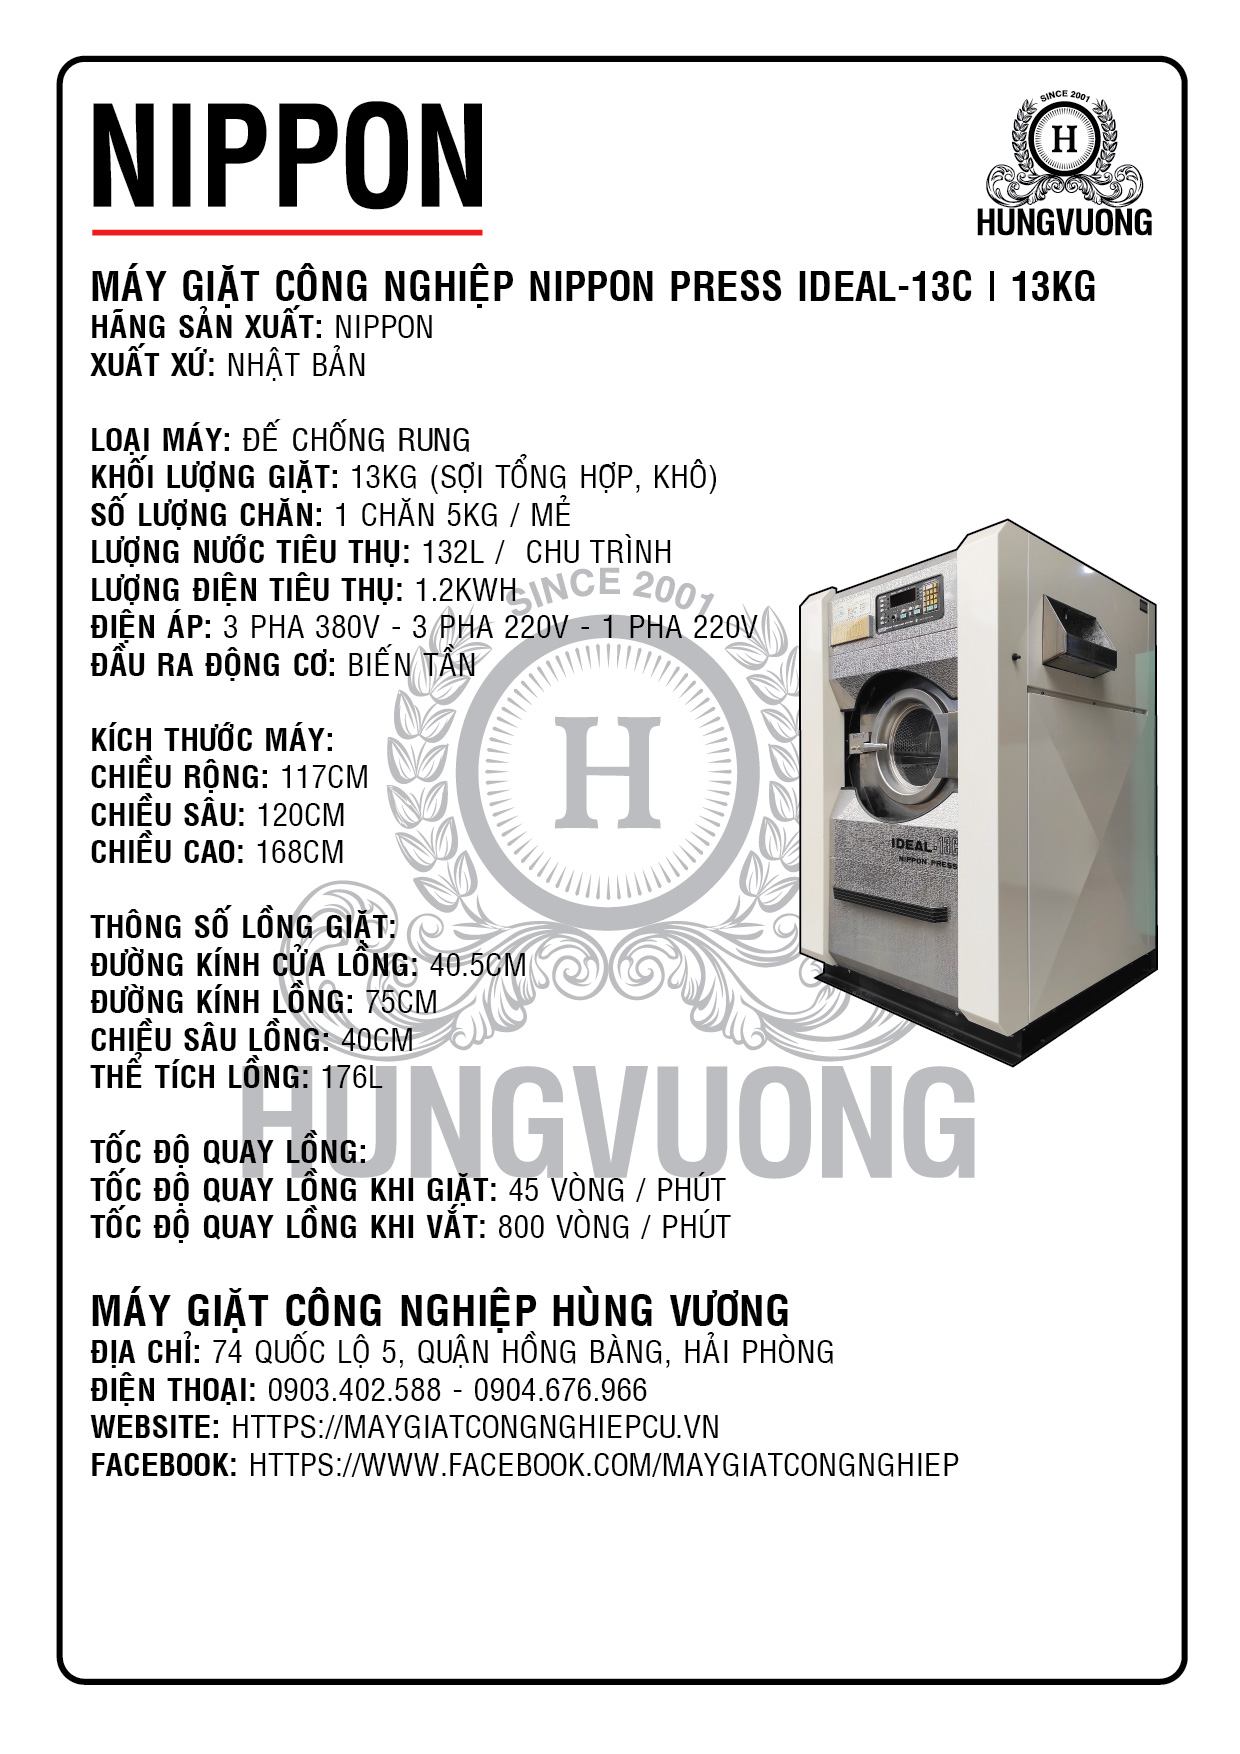 Thông số kỹ thuật máy giặt công nghiệp NIPPON PRESS IDEAL-13C, 13kg, chân chống rung, biến tần, Nhật Bản